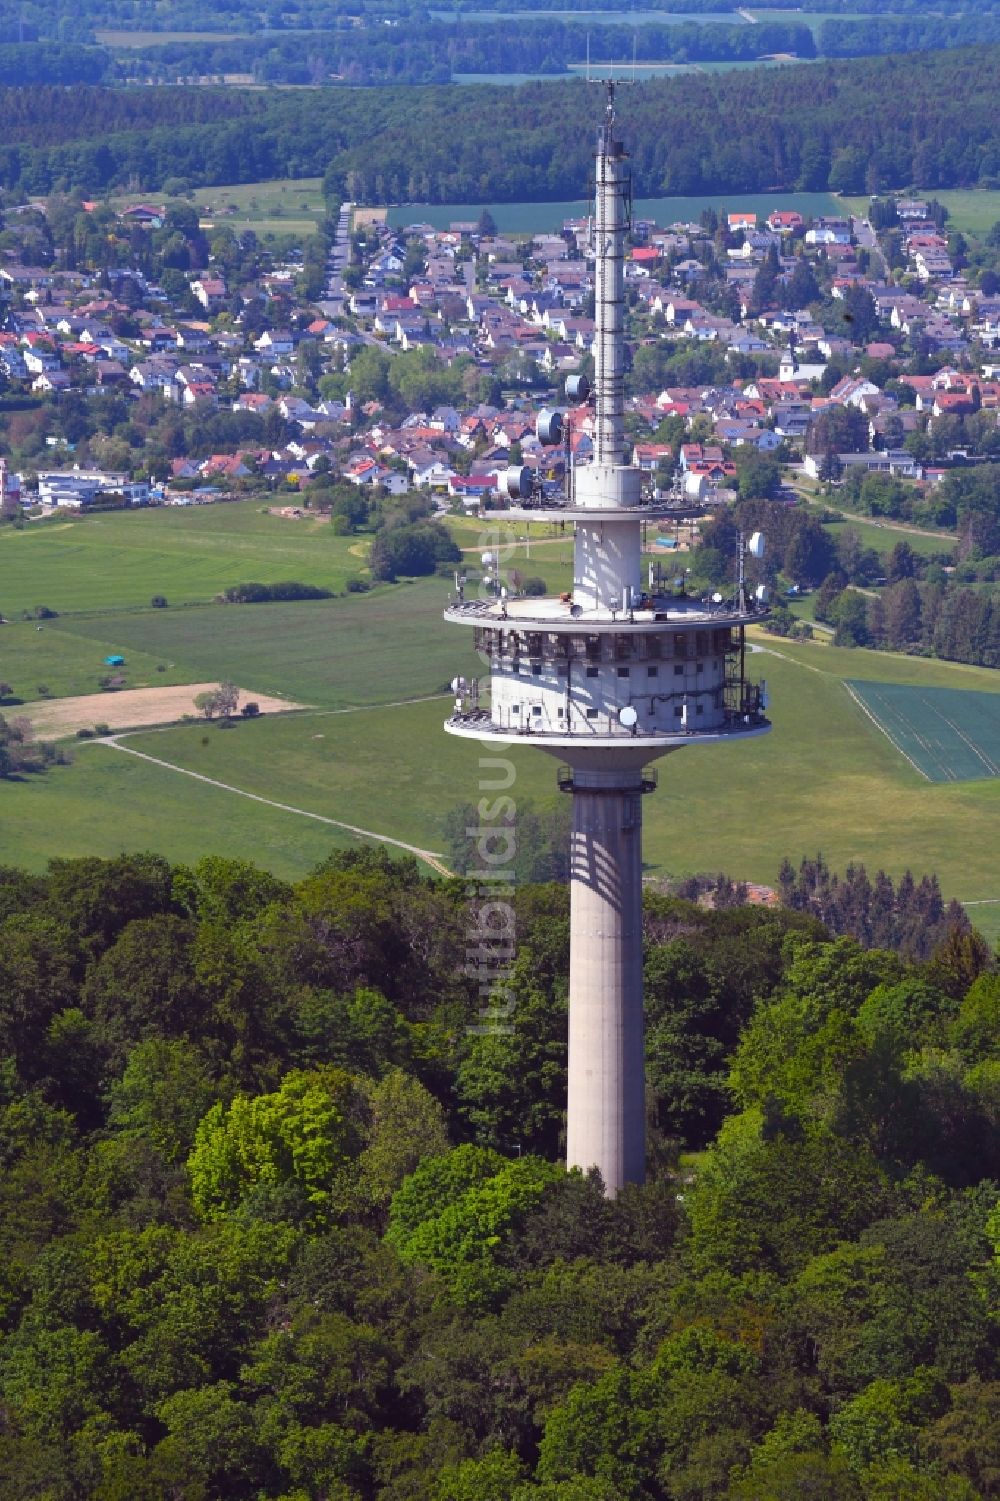 Kelkheim (Taunus) aus der Vogelperspektive: Fernmeldeturm und Fernsehturm in Kelkheim (Taunus) im Bundesland Hessen, Deutschland